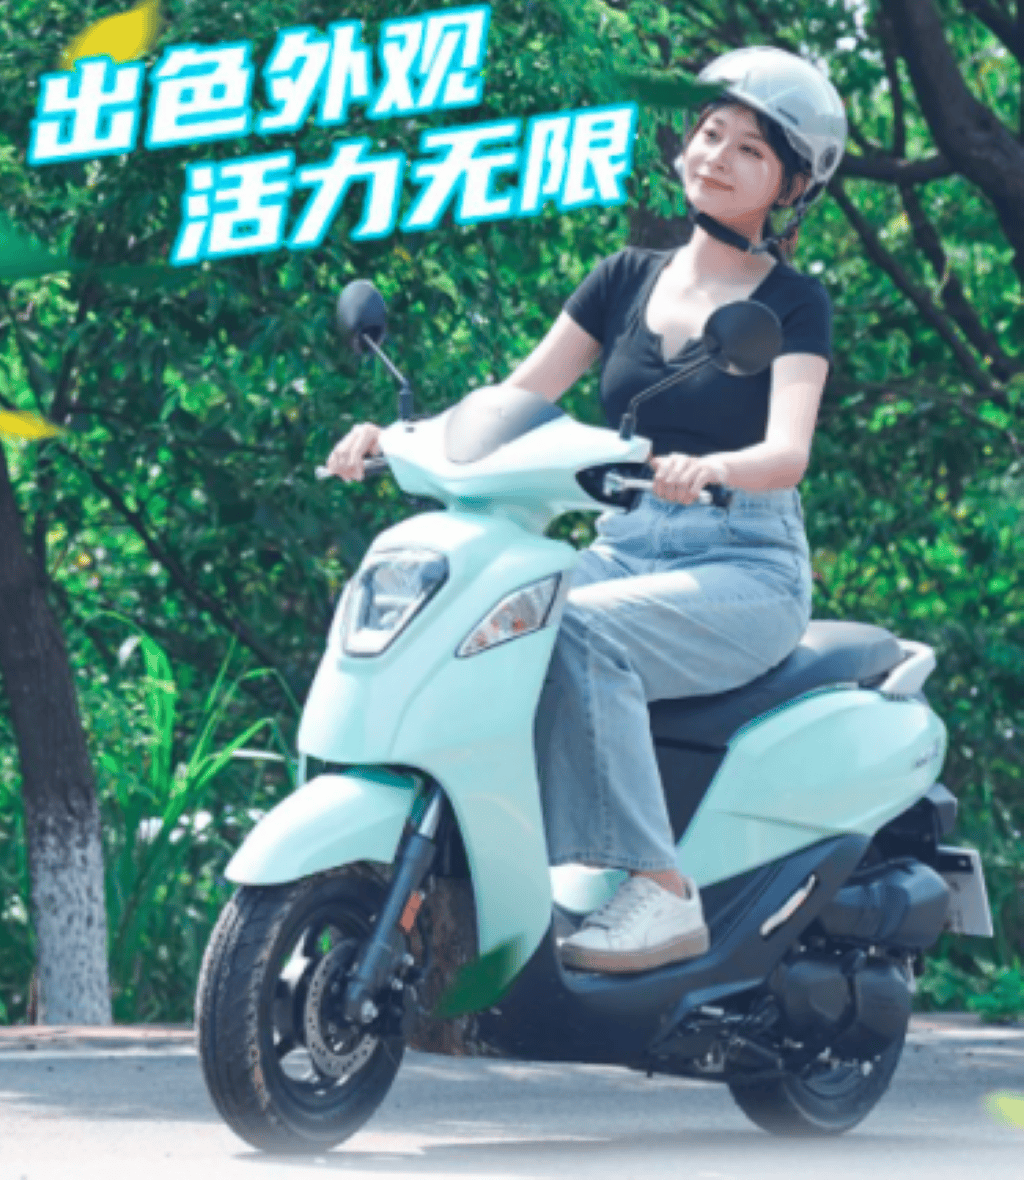 Honda Genio 110 phiên bản “hạ bánh”, biến thành NS110Q tại thị trường Trung Quốc ảnh 8